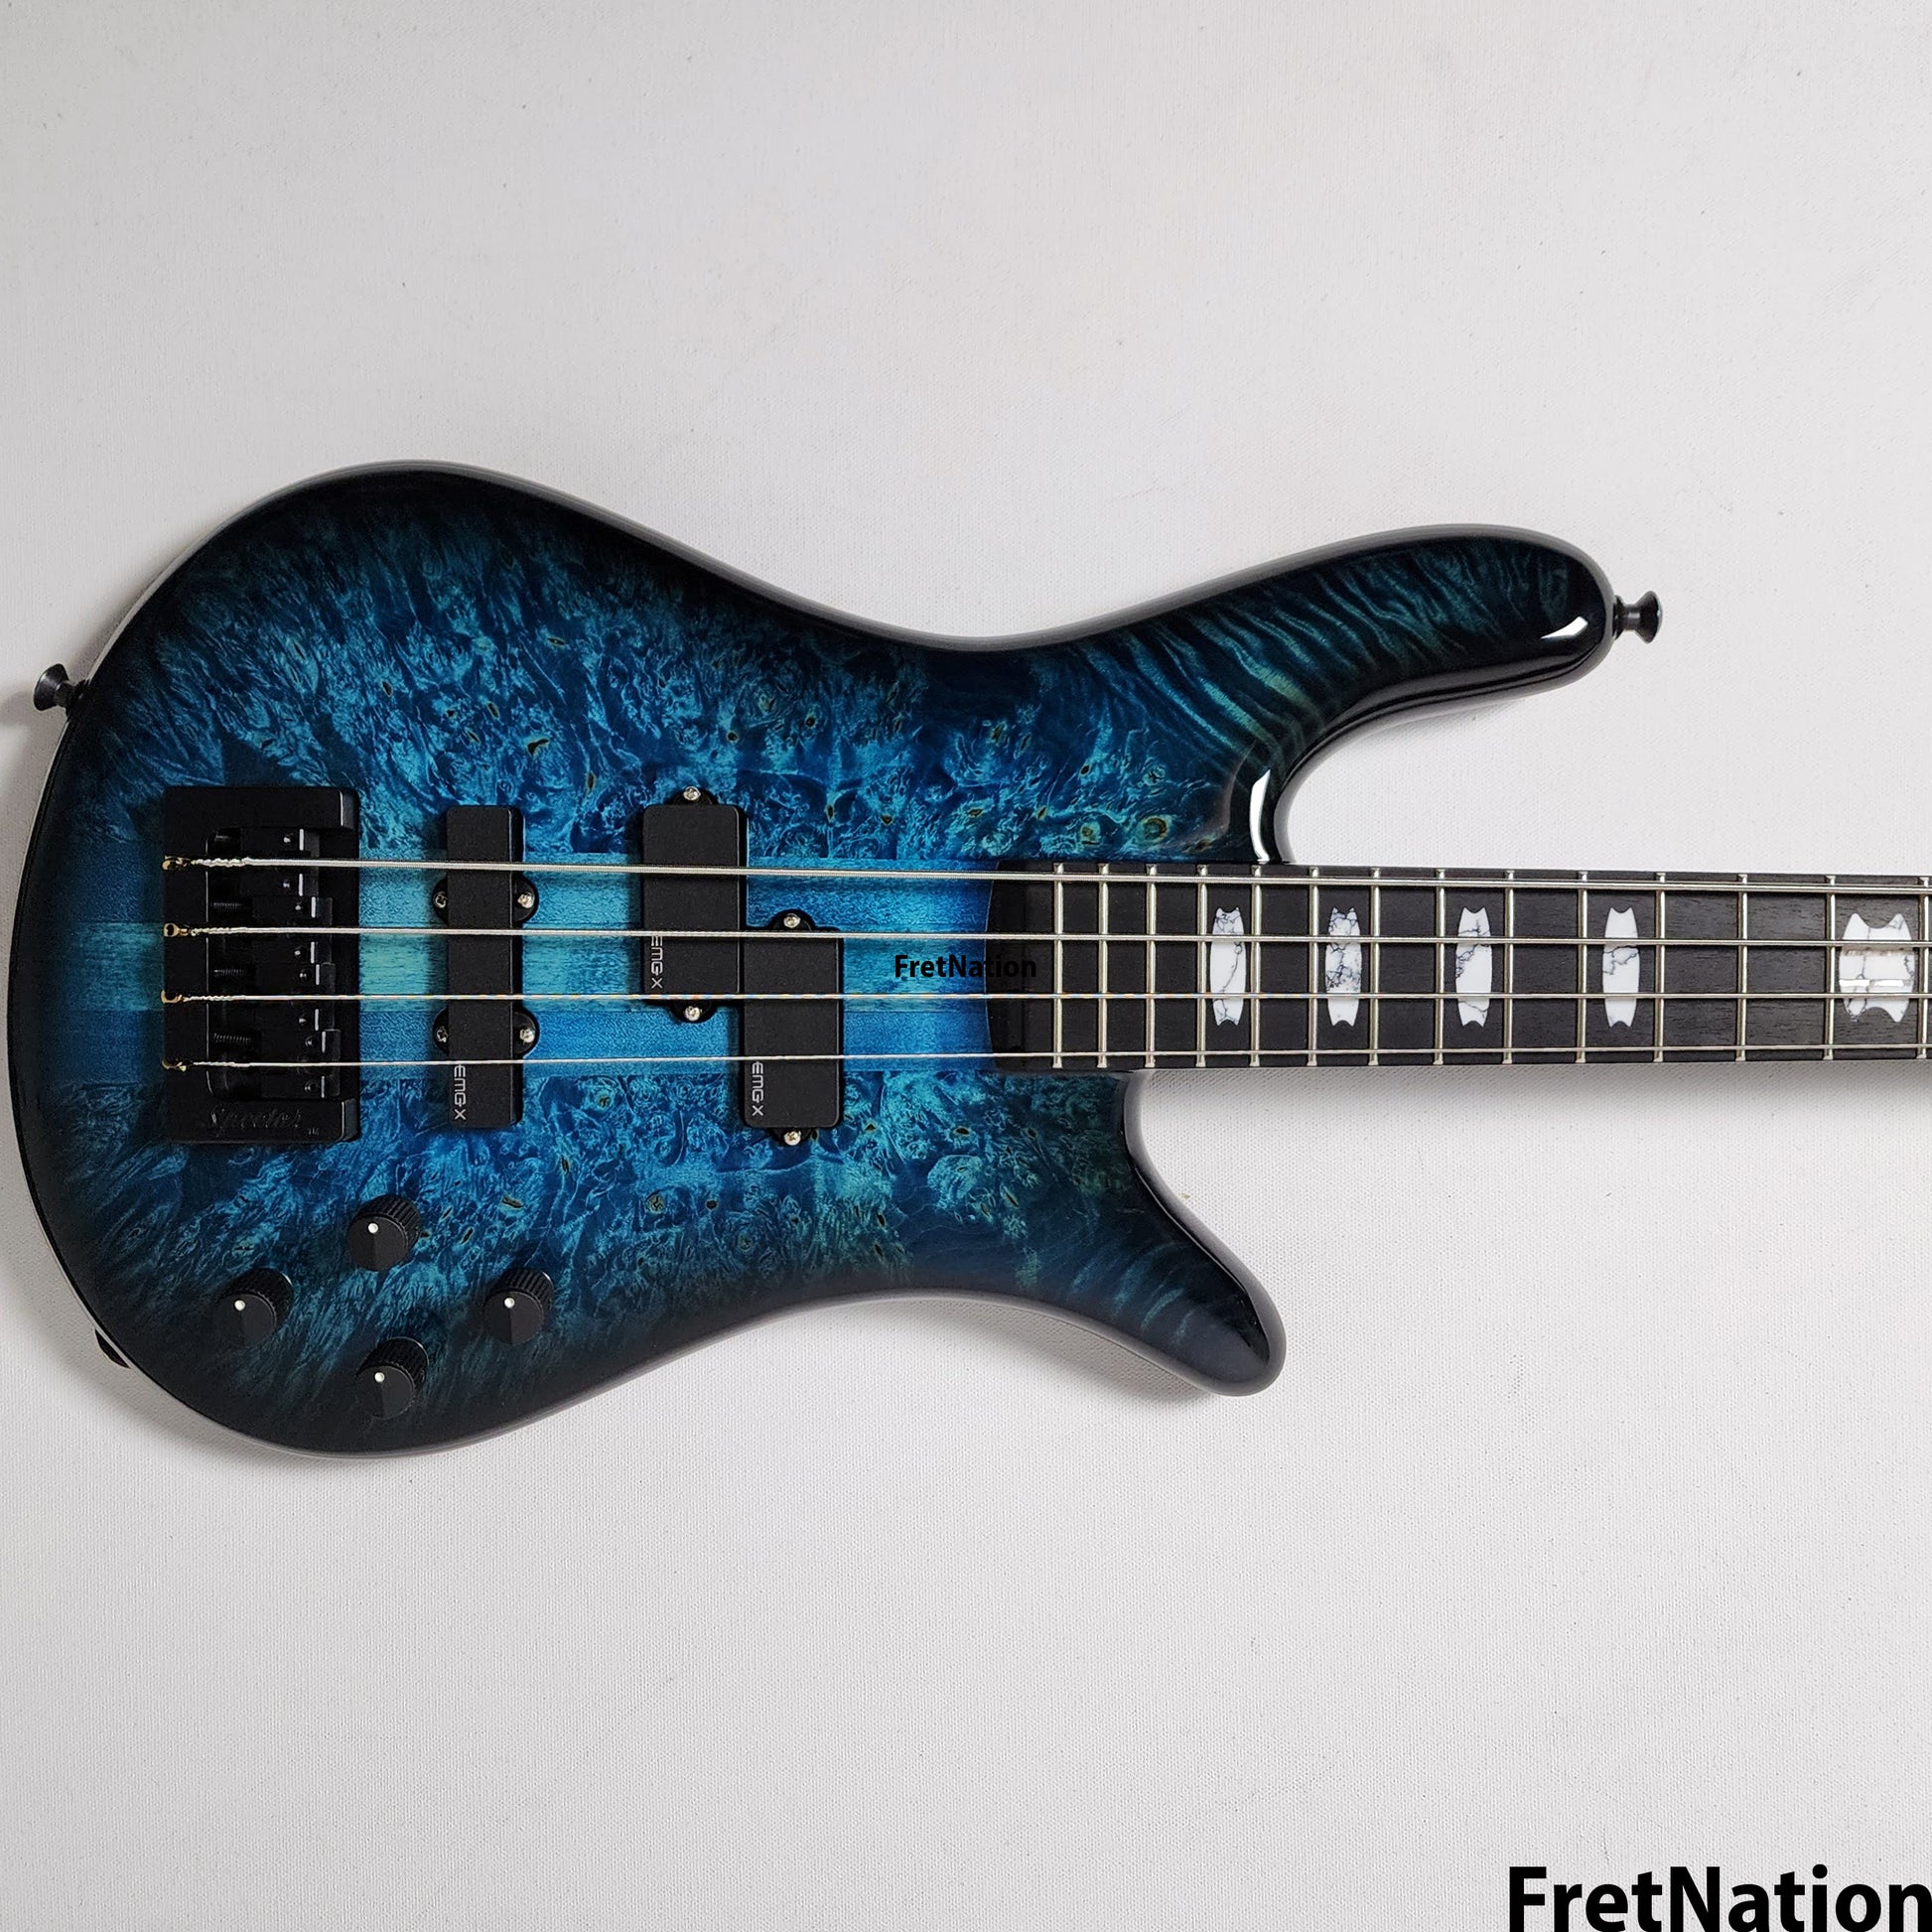 Spector Spector USA New Era NS-2 Narrow 4-String Bass Blue Inferno #1629 8.48lbs